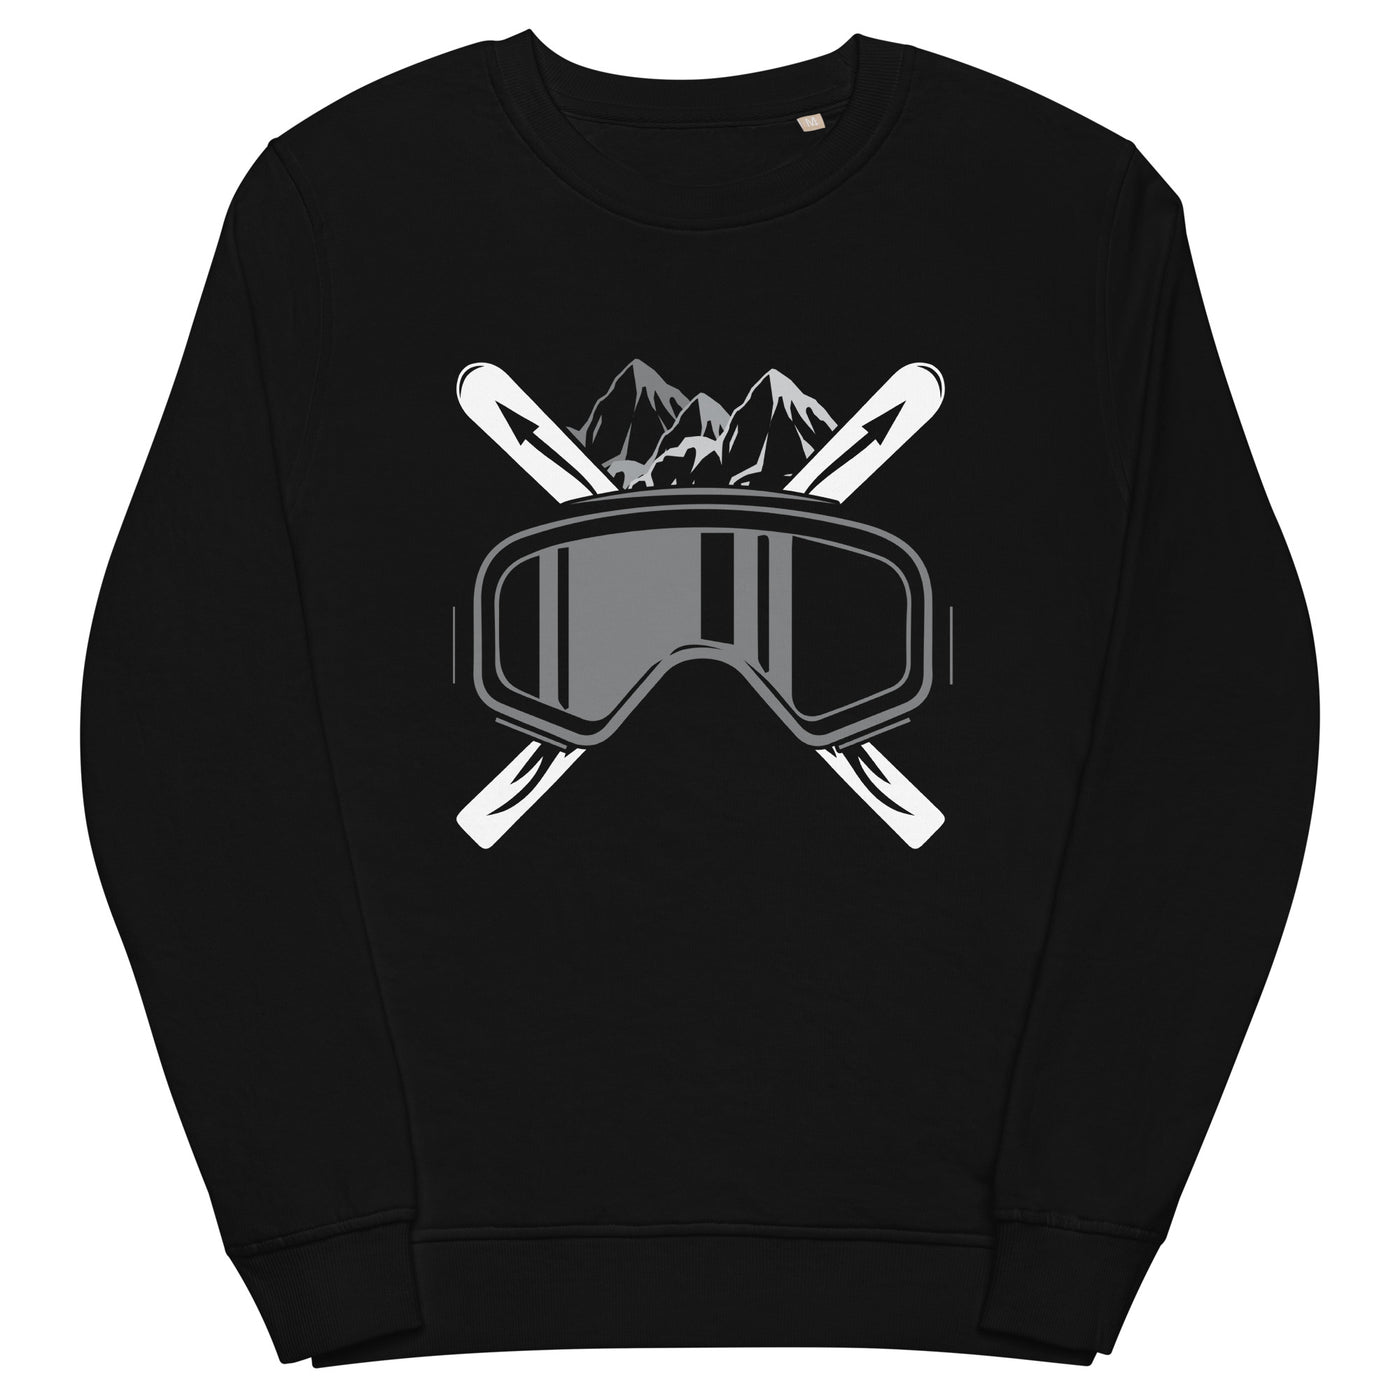 Schifoan - Unisex Premium Organic Sweatshirt klettern ski xxx yyy zzz Black